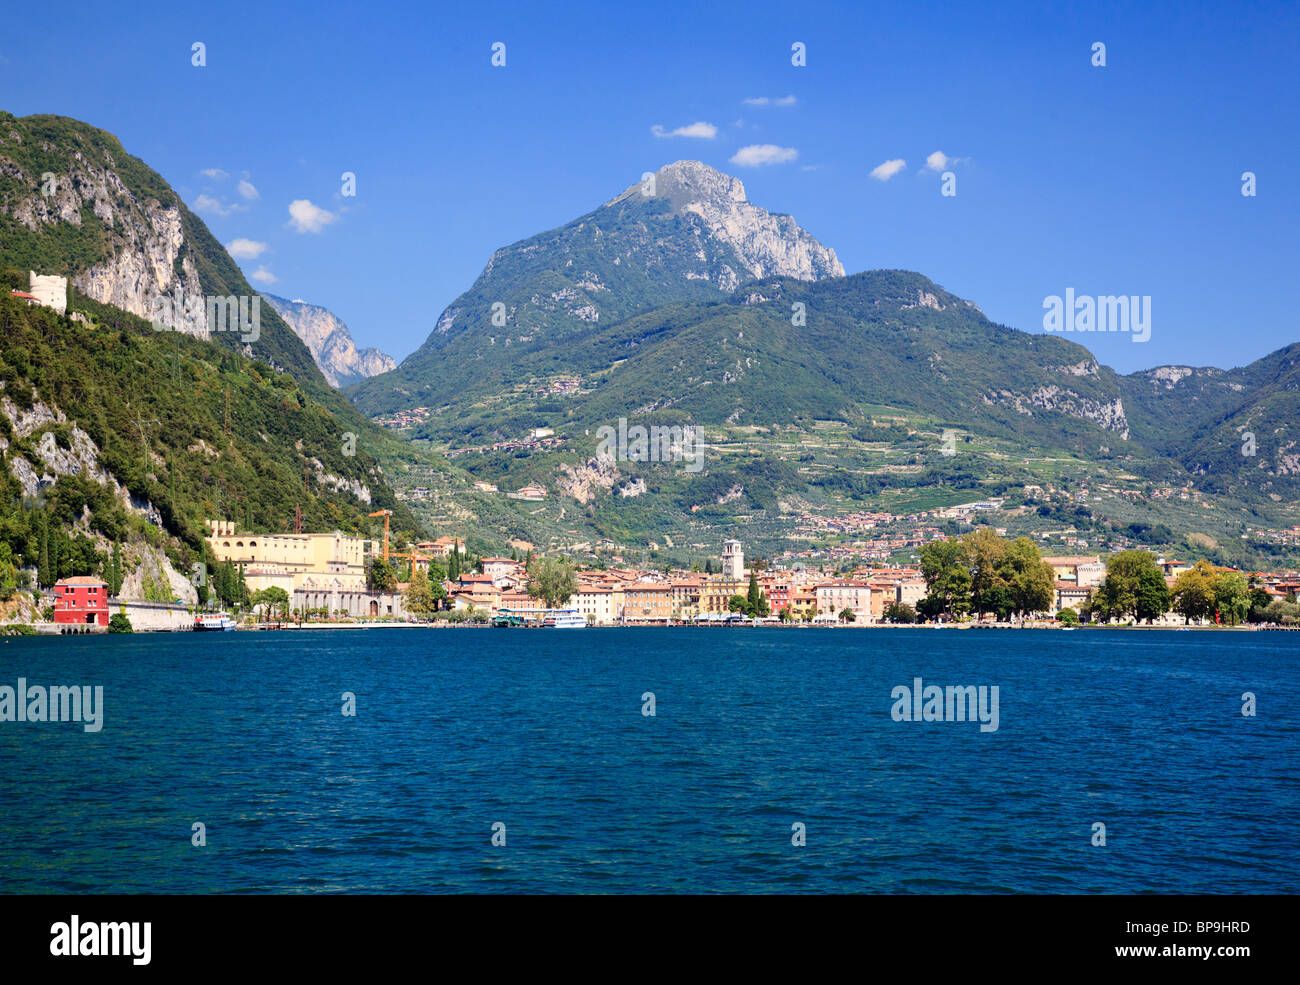 La ville de Riva del Garda à l'extrémité nord du lac de Garde, le Trentin, Italie Banque D'Images